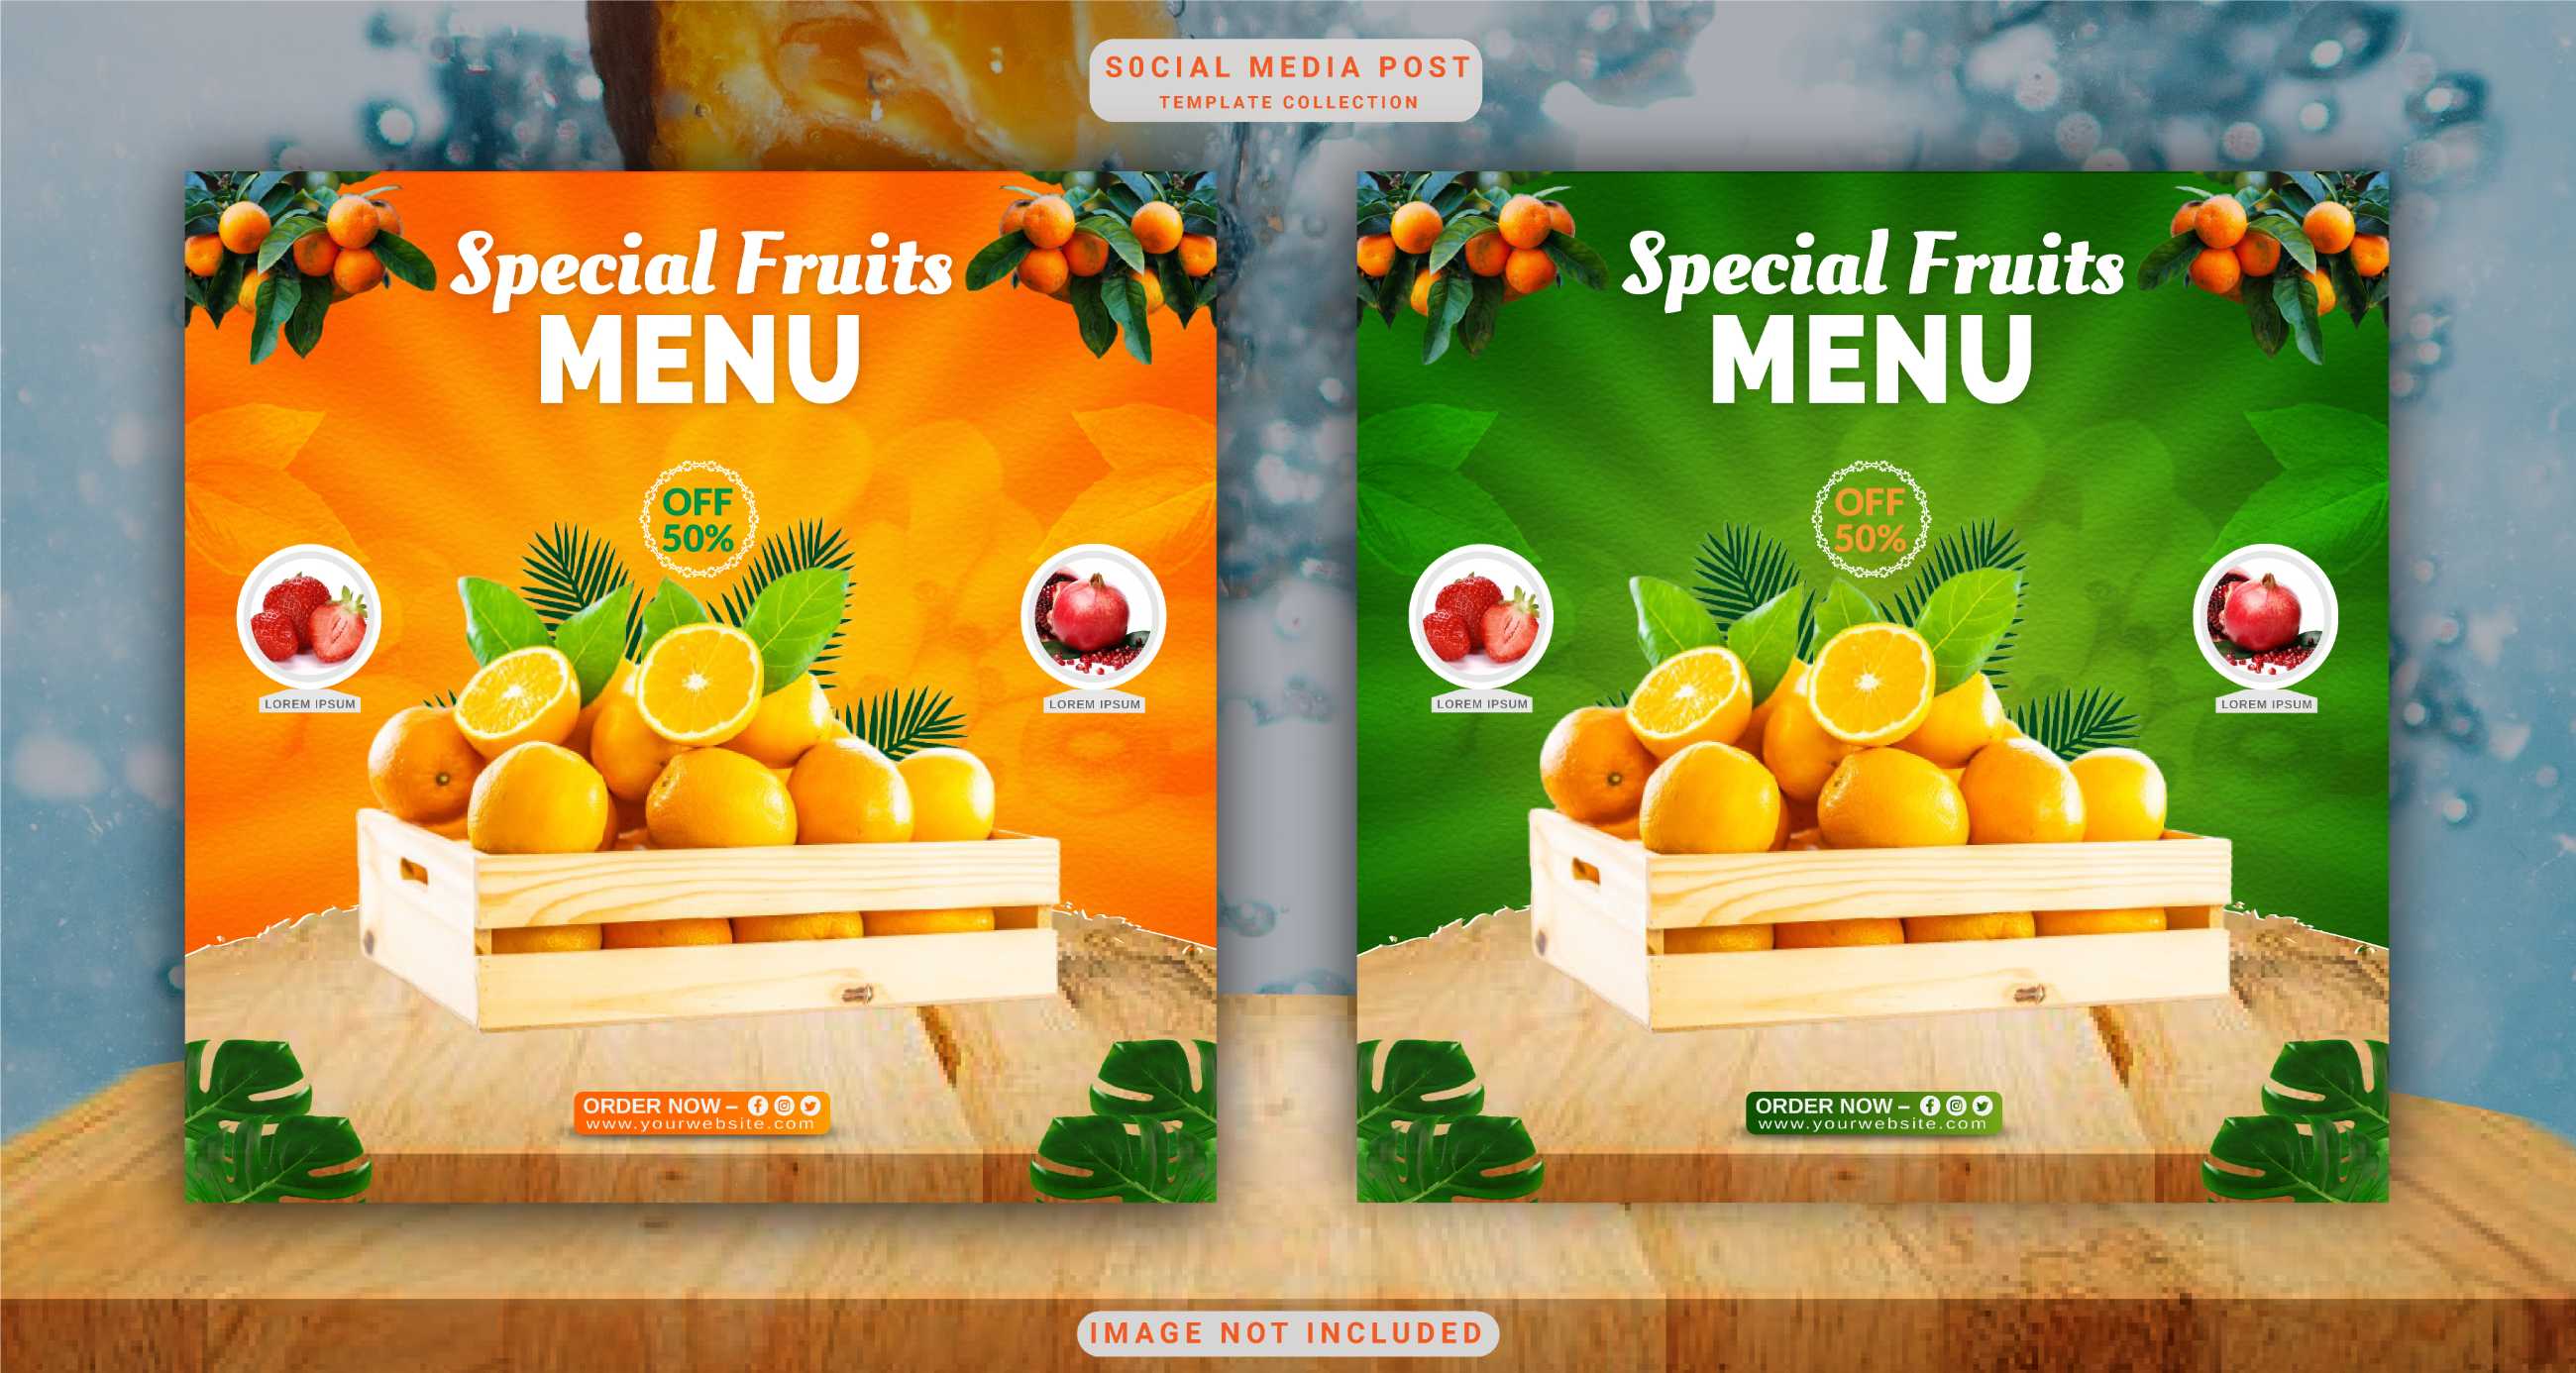 特别水果菜单(印)旗广告概念社交媒体张贴模板